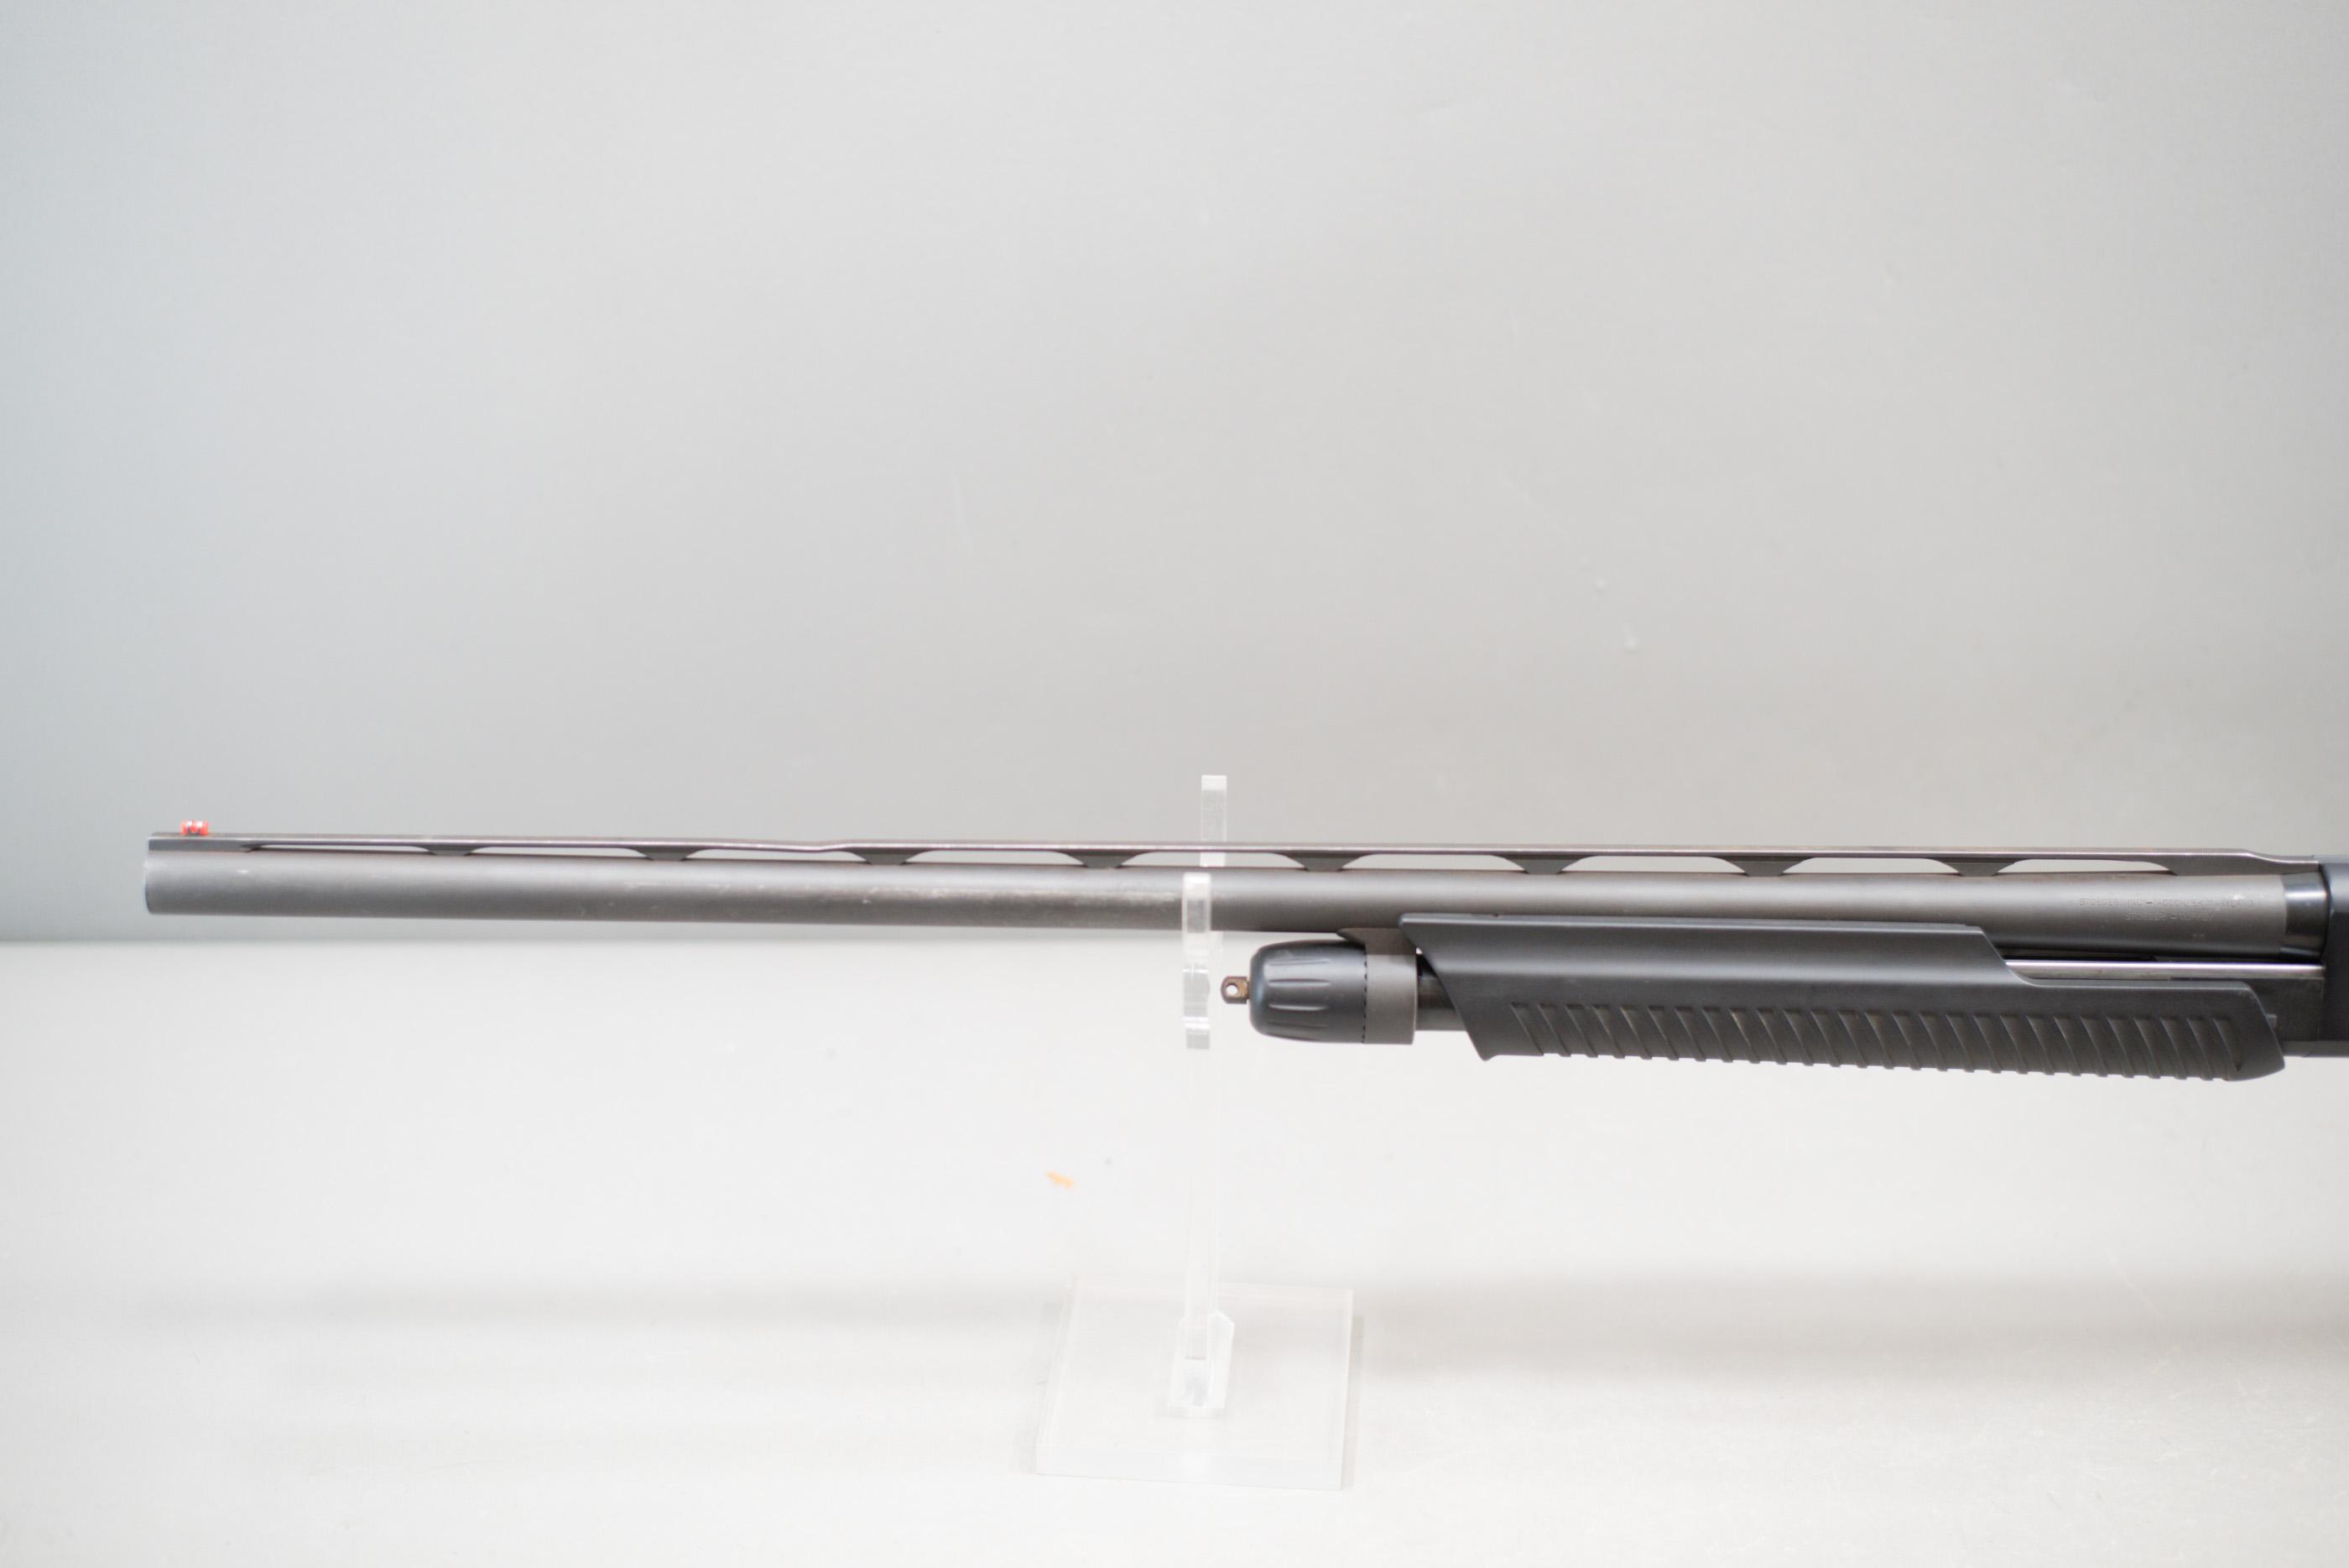 (R) Stoeger Model P350 12 Gauge Shotgun